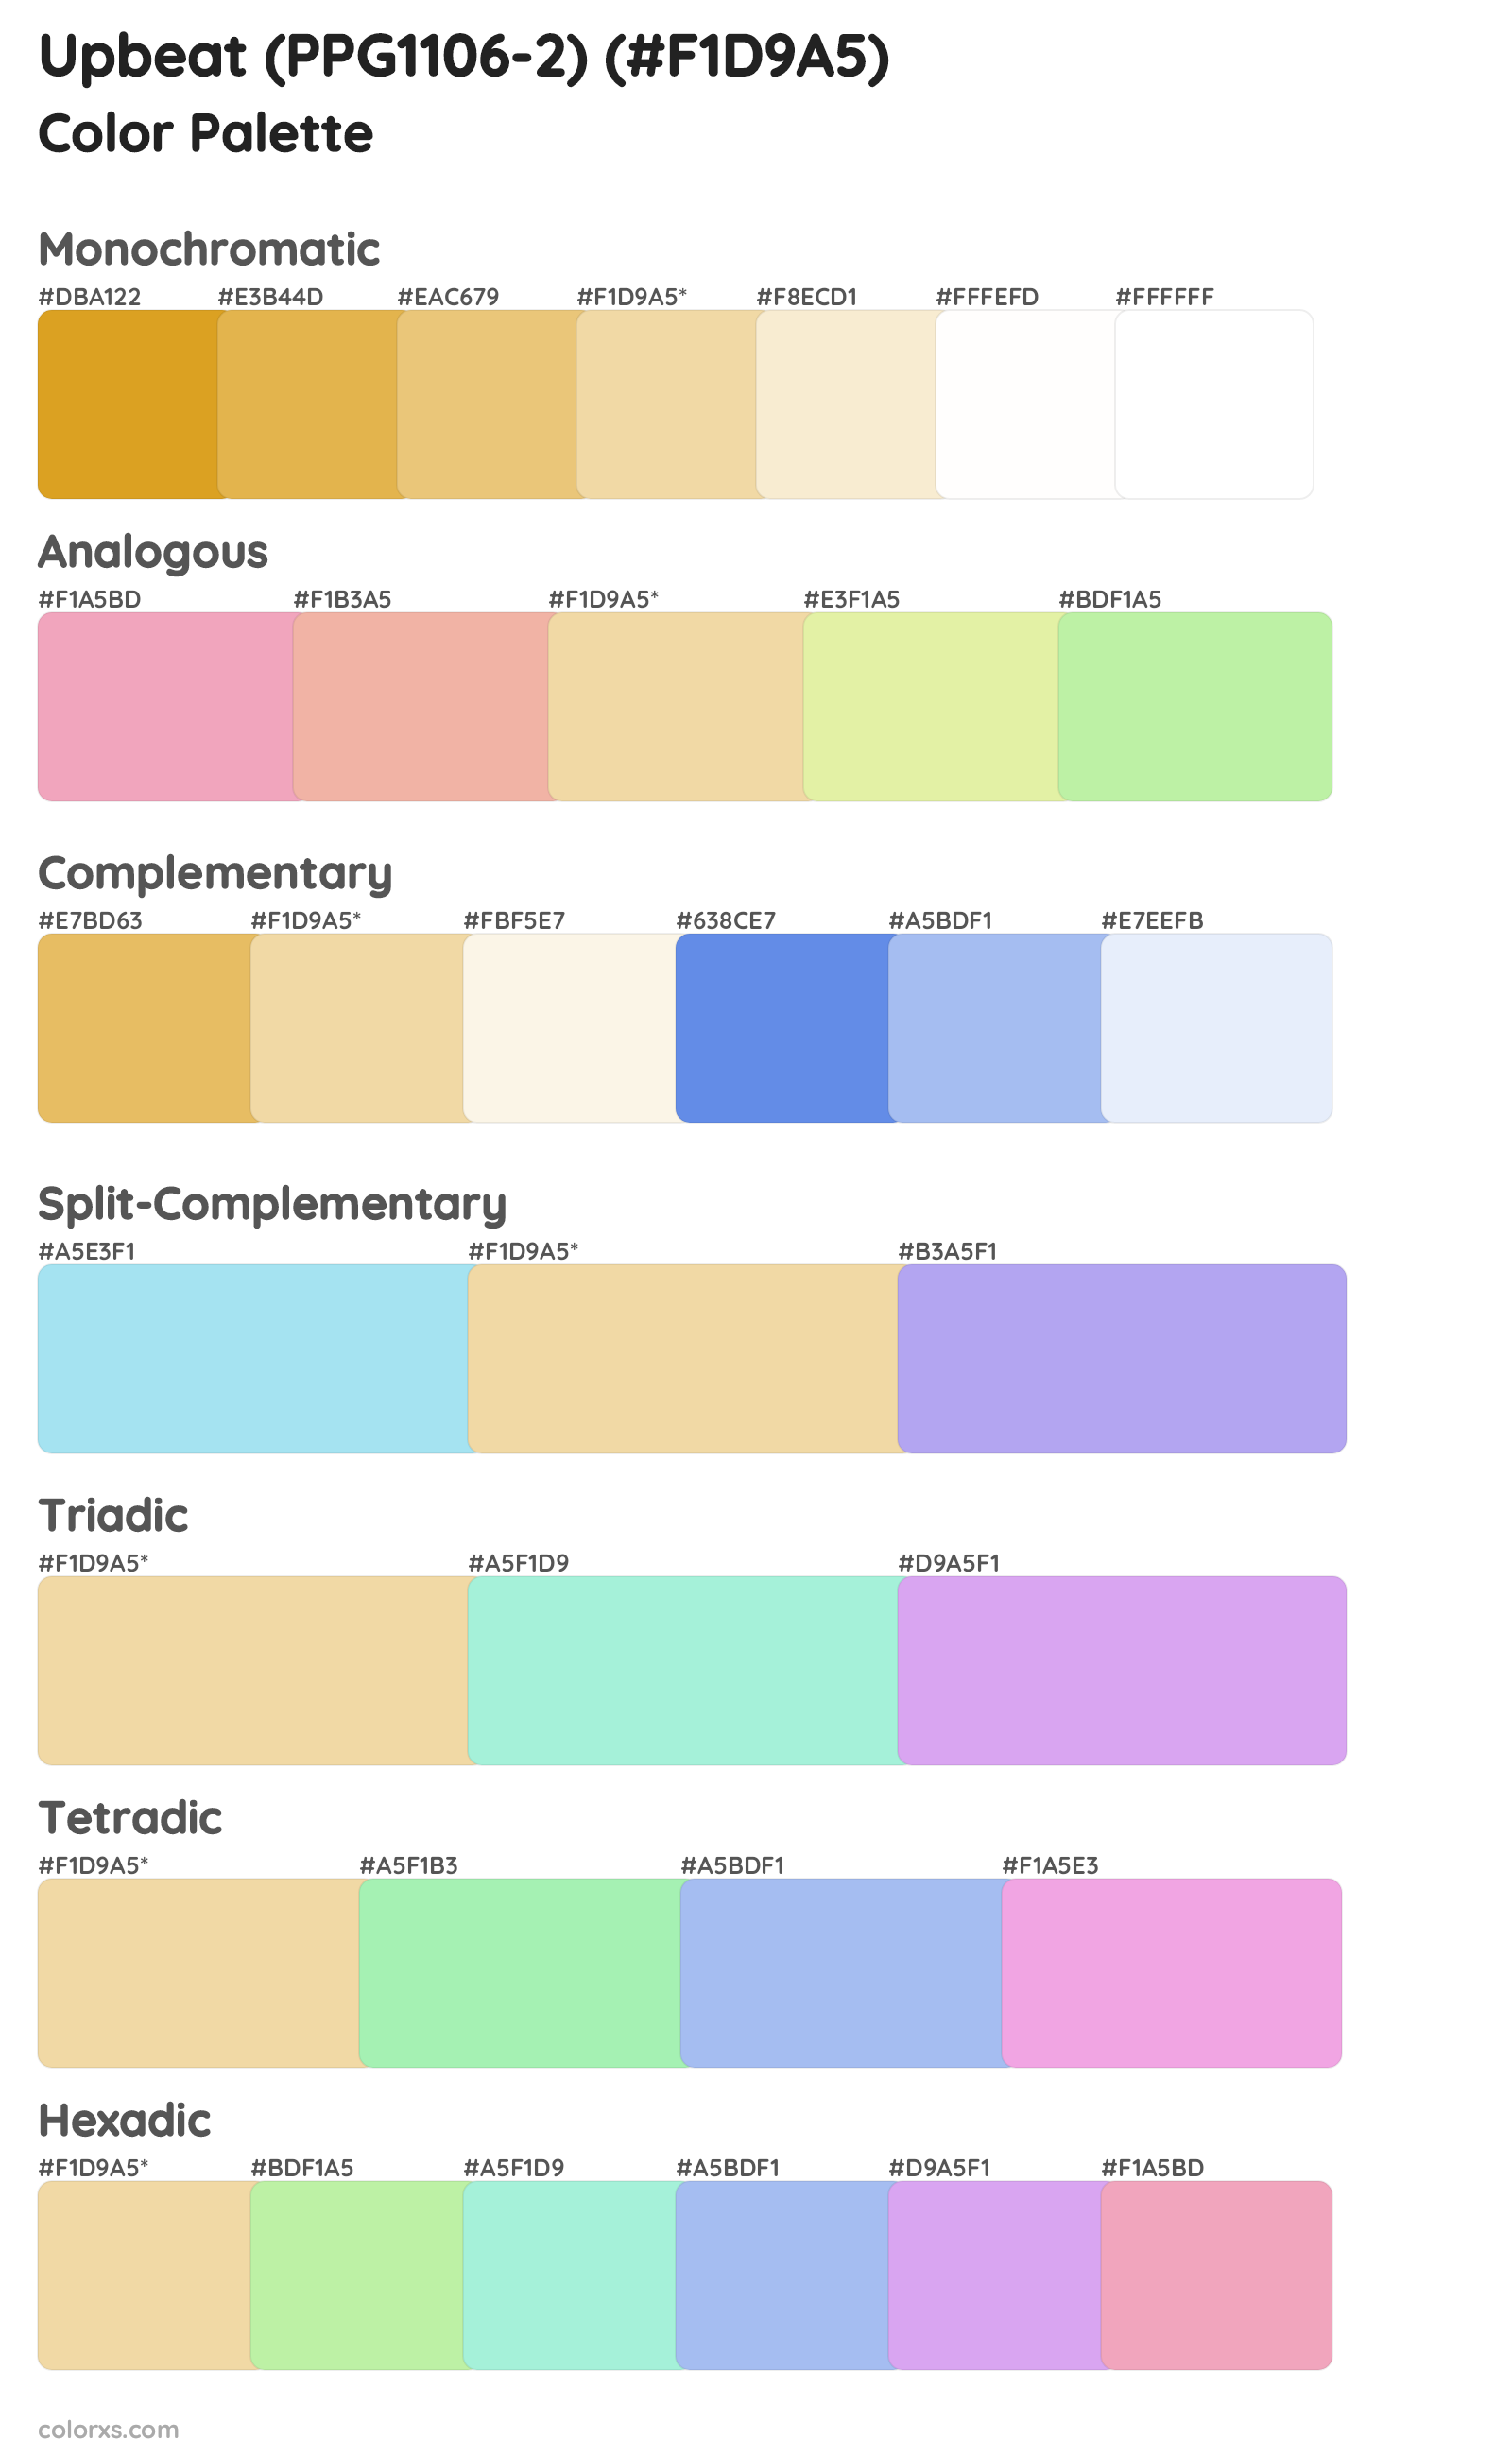 Upbeat (PPG1106-2) Color Scheme Palettes